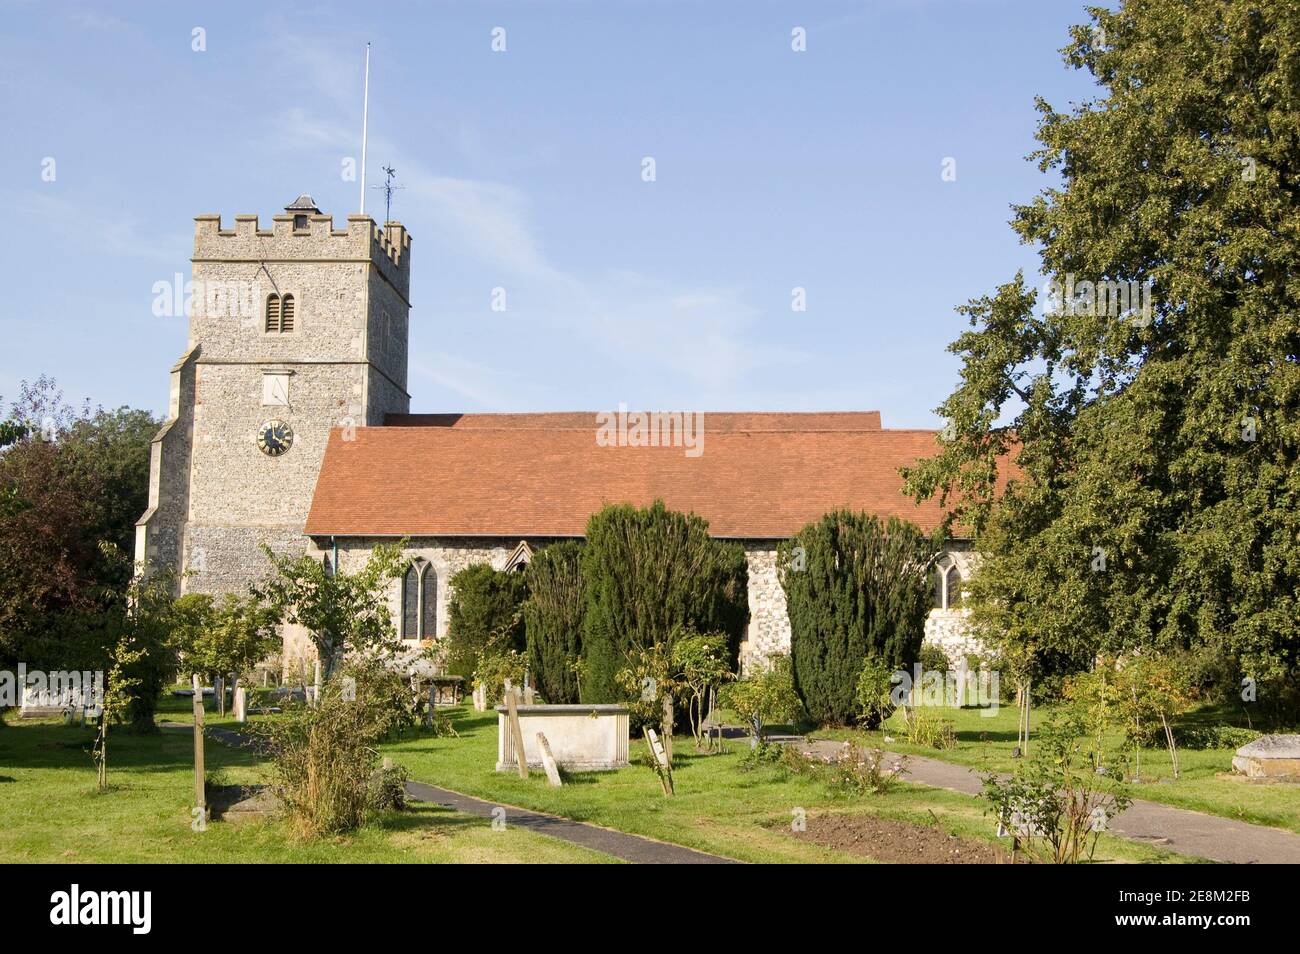 L'église historique de la Sainte Trinité dans le village de Cookham, Berkshire. Célèbre peint par l'artiste local Stanley Spencer. Banque D'Images